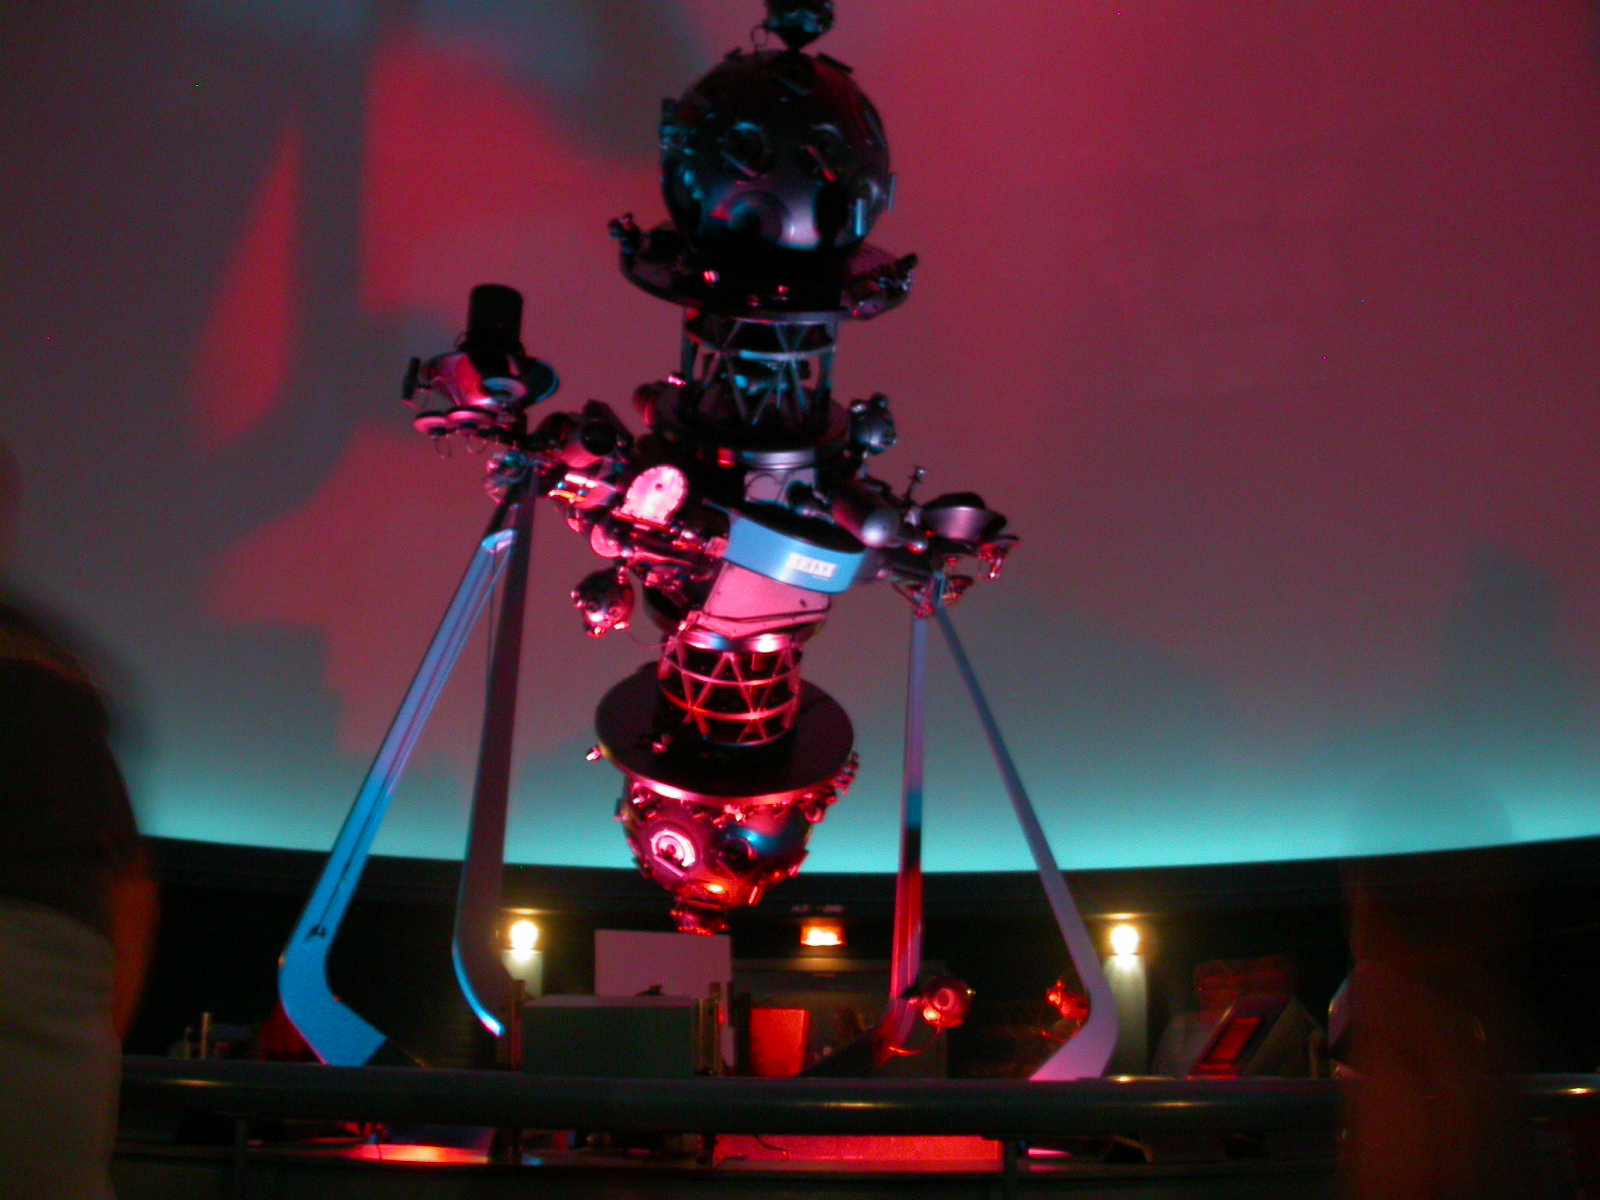 eva projector stellarium planetarium color pink machine